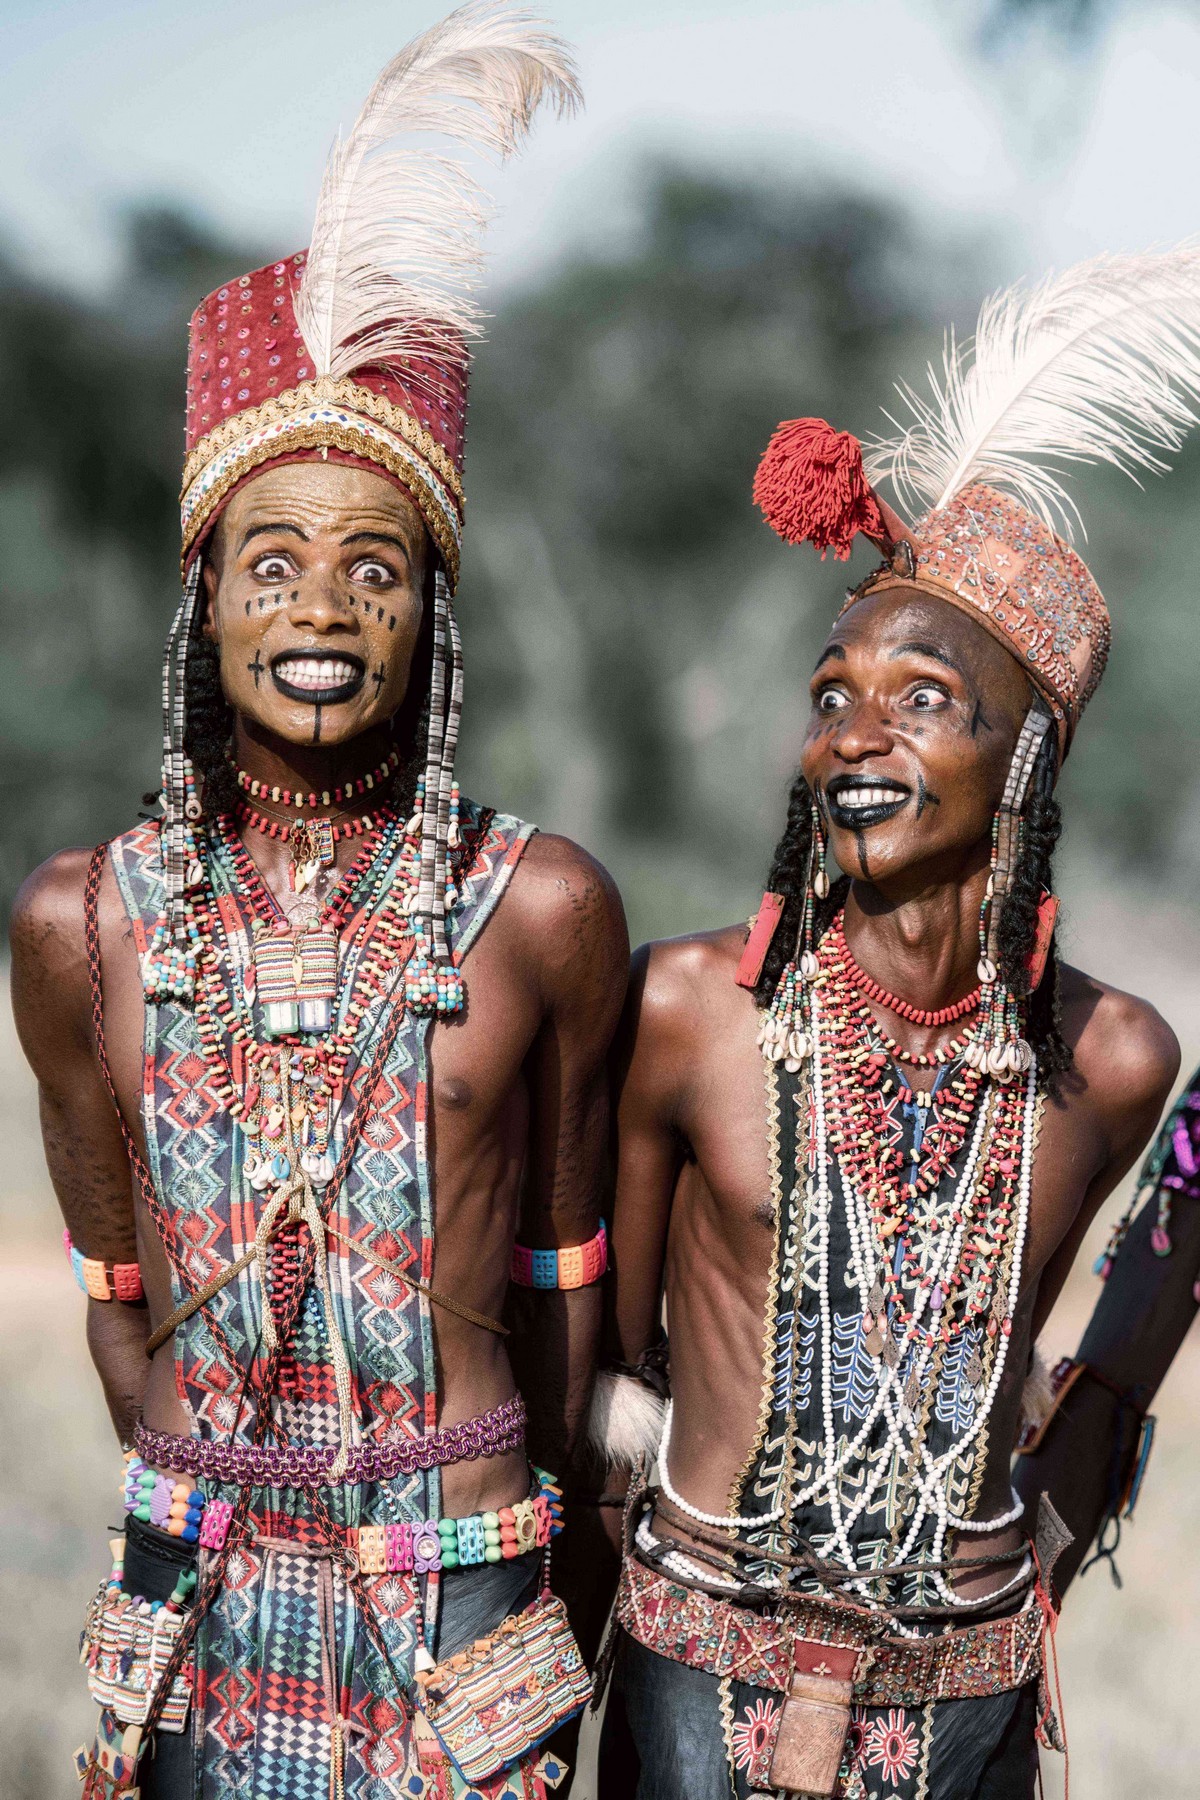 Мужчины племени Водабе делают прическу и макияж, чтобы впечатлить дам Мужчины